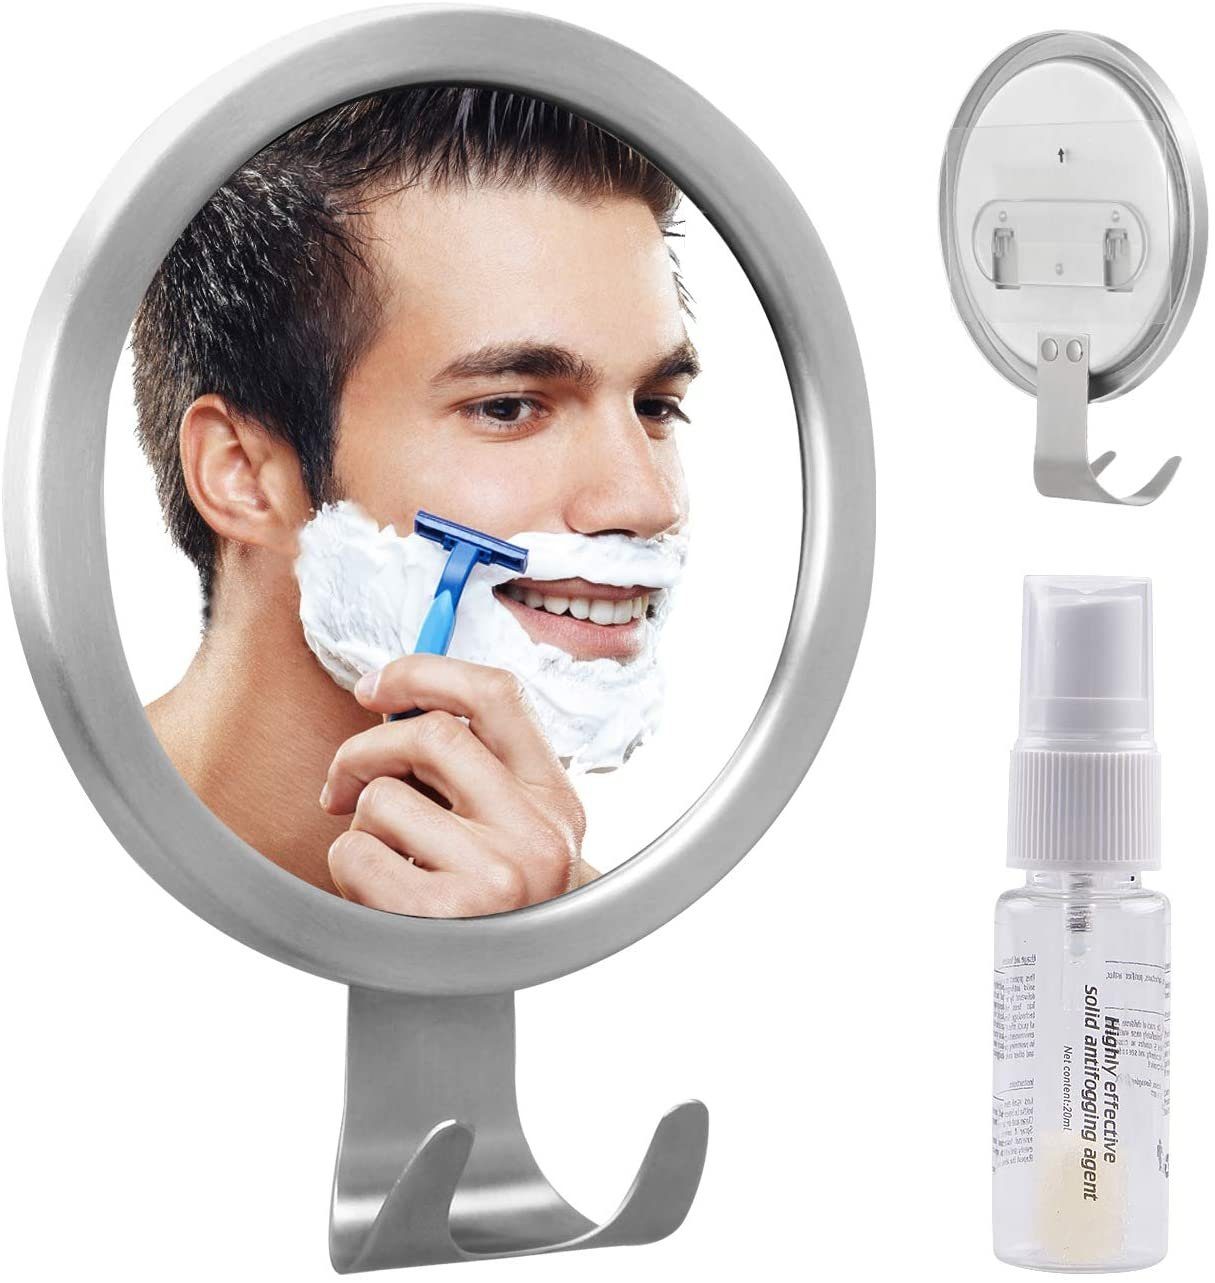 Bohren Kosmetikspiegel Antibeschlag Kosmetikspiegel GlobaLink OHNE